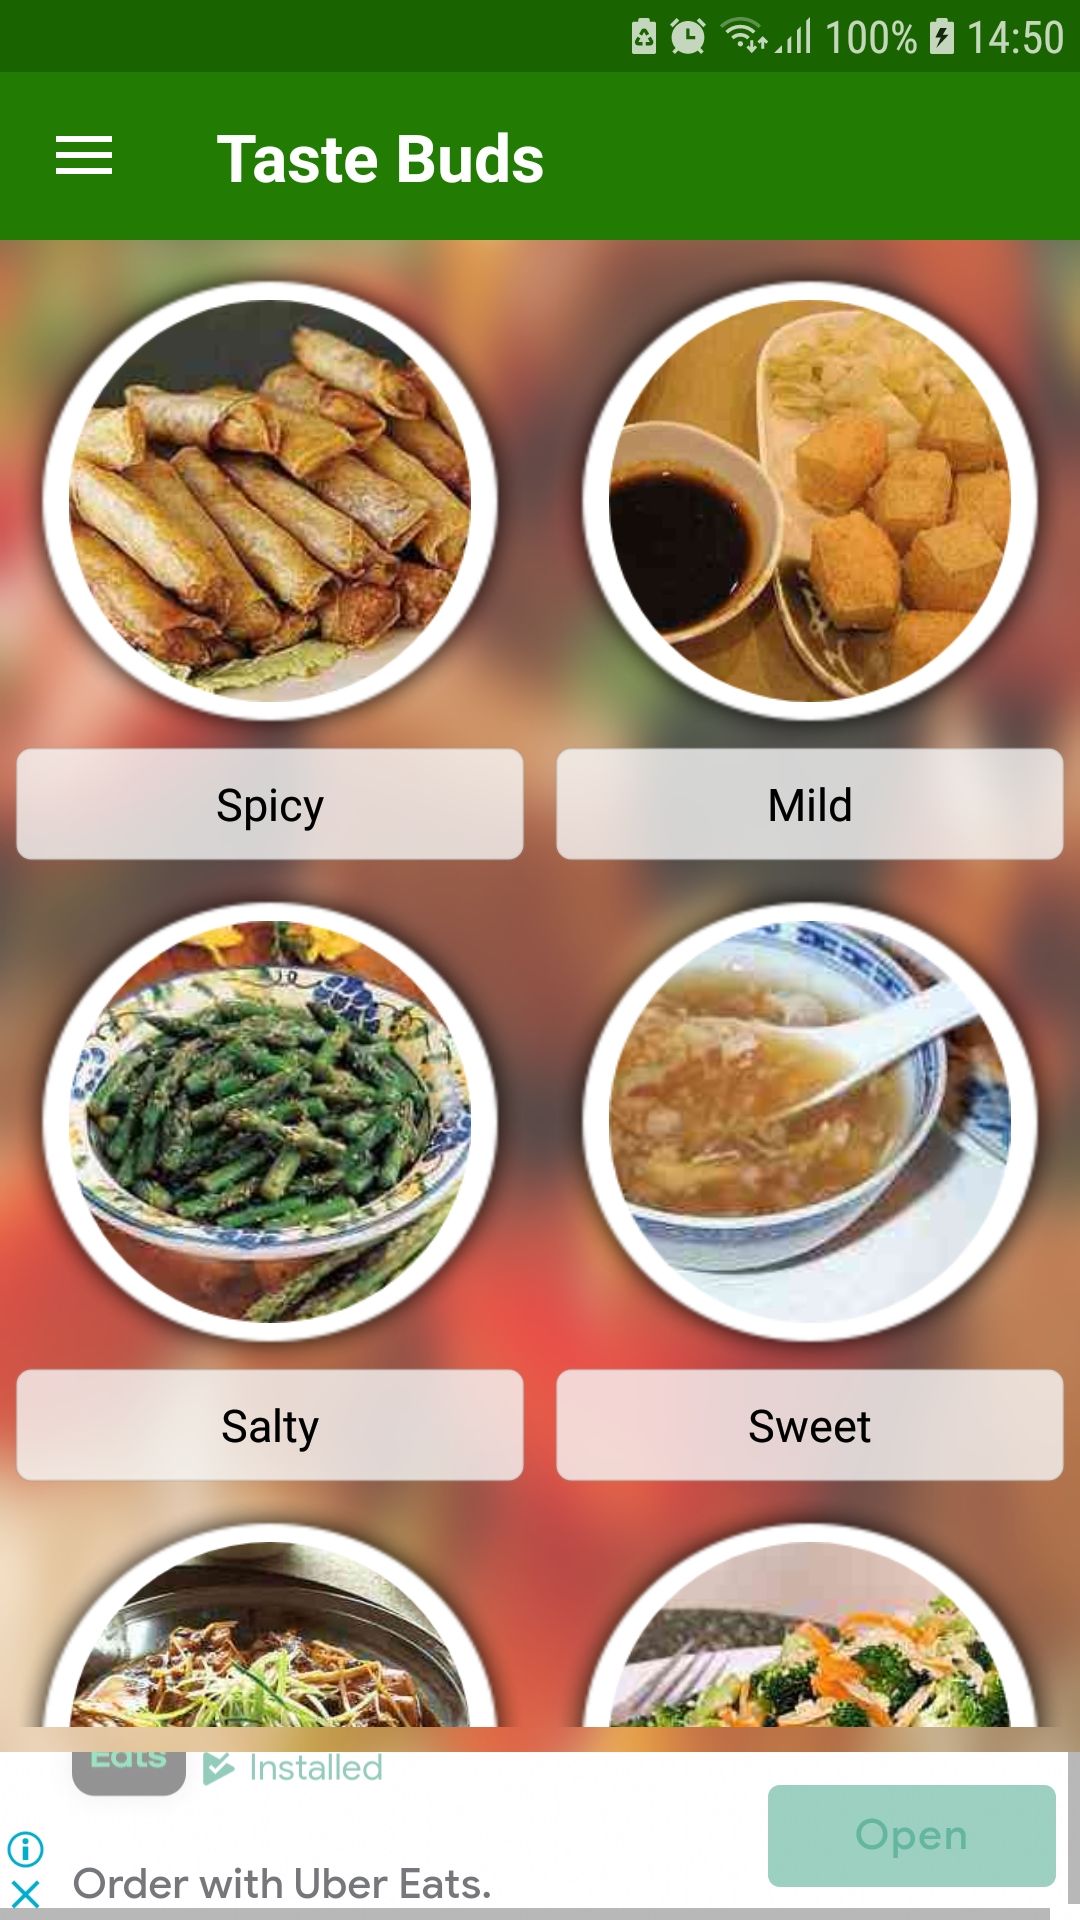 Recettes chinoises, application mobile de recette, goût